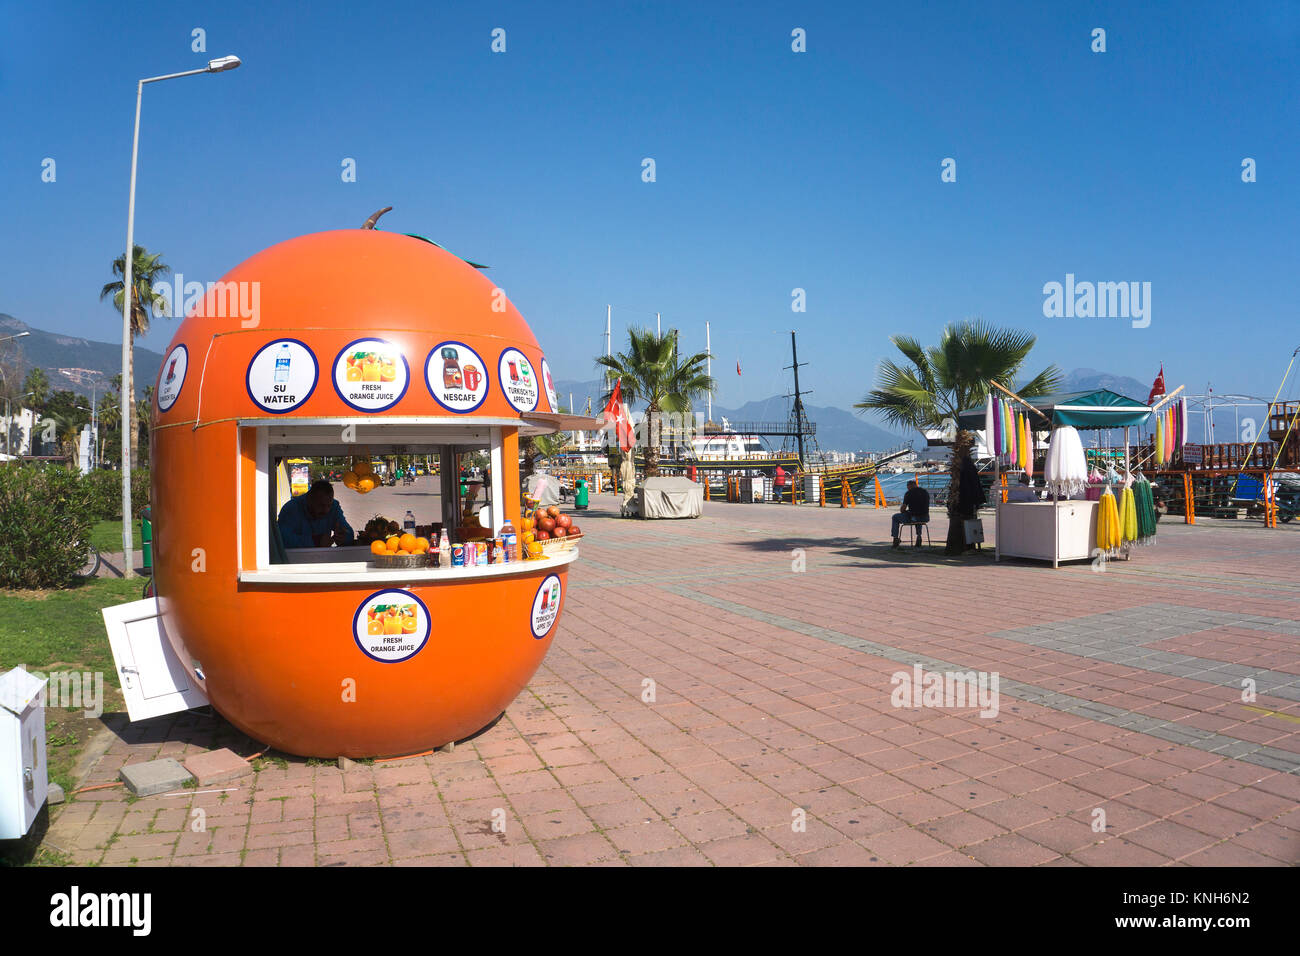 Succo di frutta bar a porto promenade, Alanya, riviera turca, Turchia Foto Stock